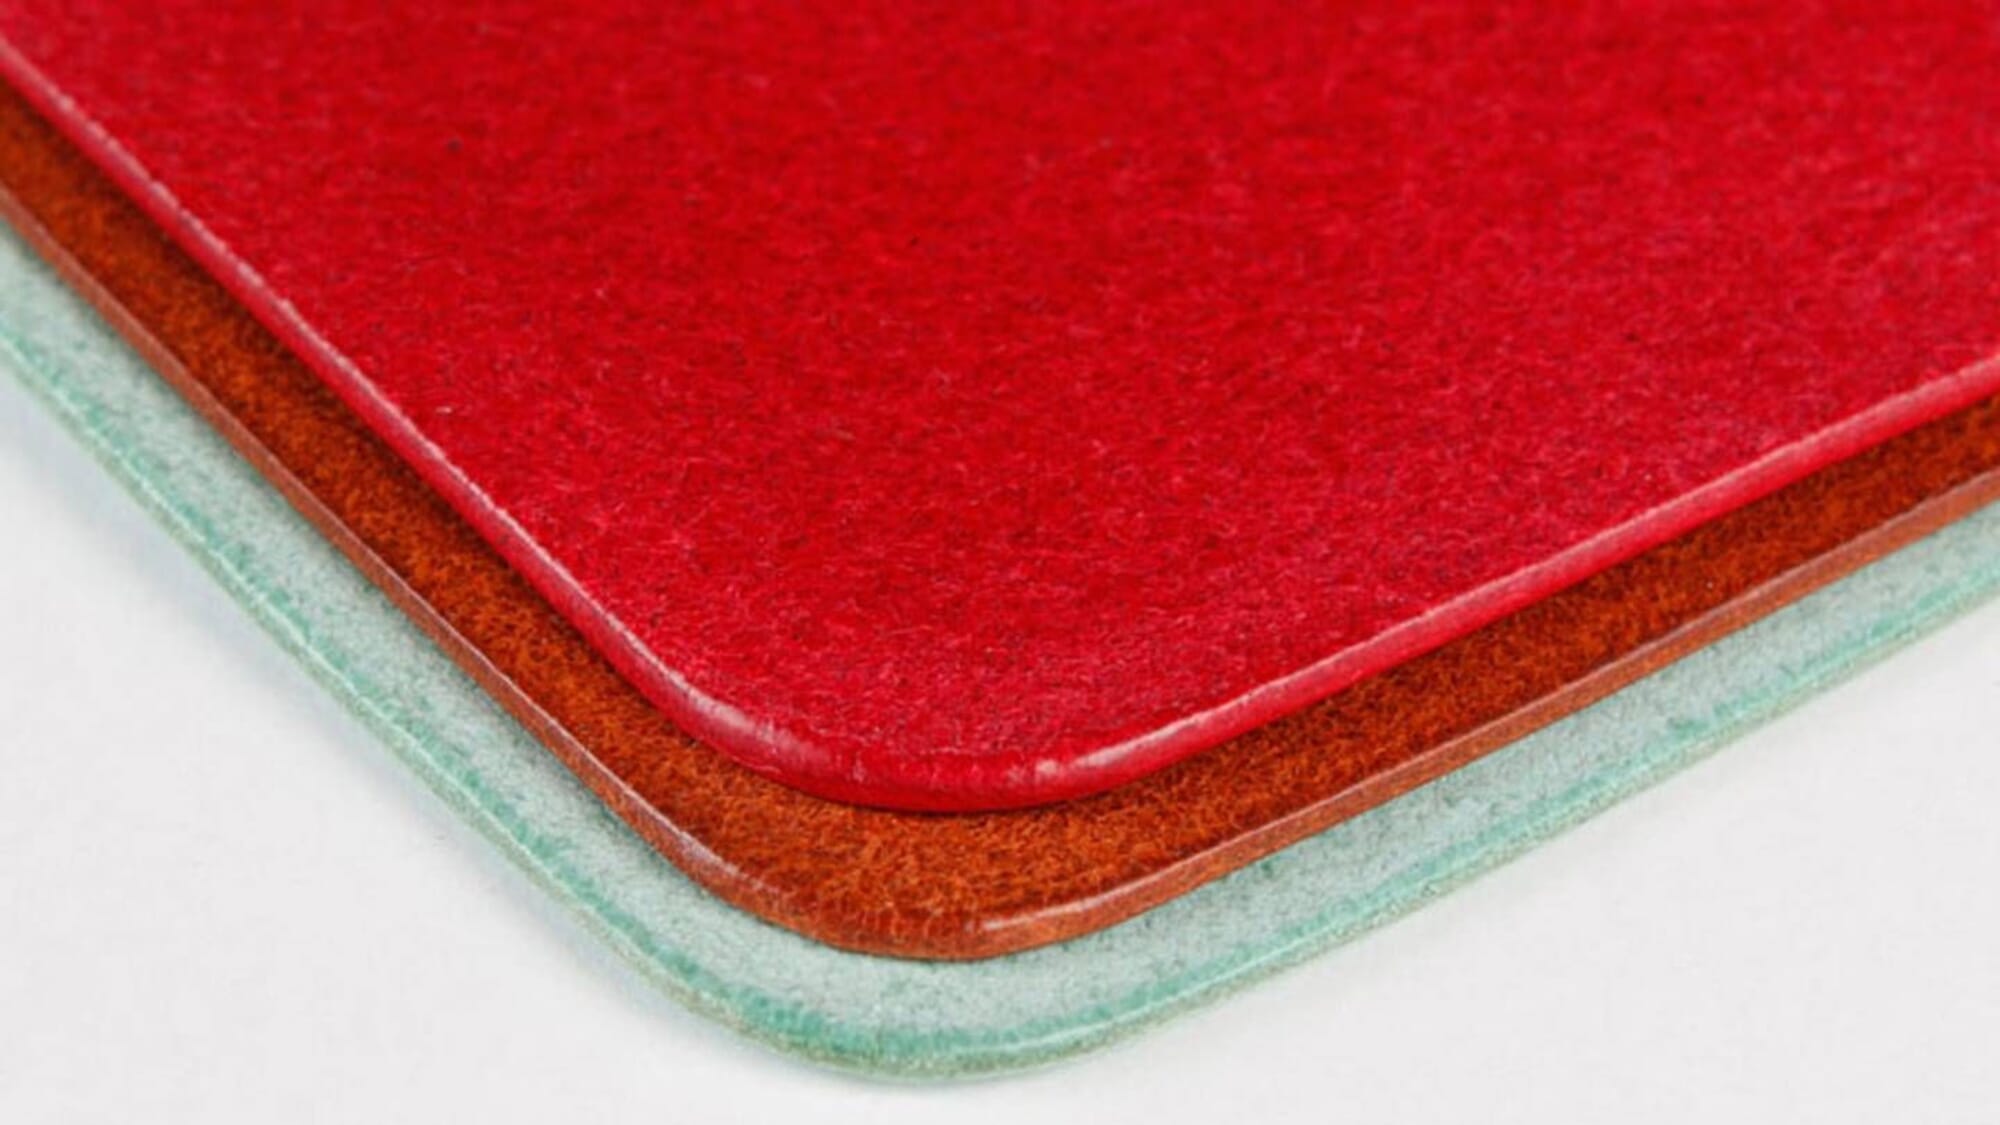 Craft Sha Leatherworking 100g Toko Pro Japanese Leather Finish Burnishing Gum, for Flesh Side & Edges of Leathercraft